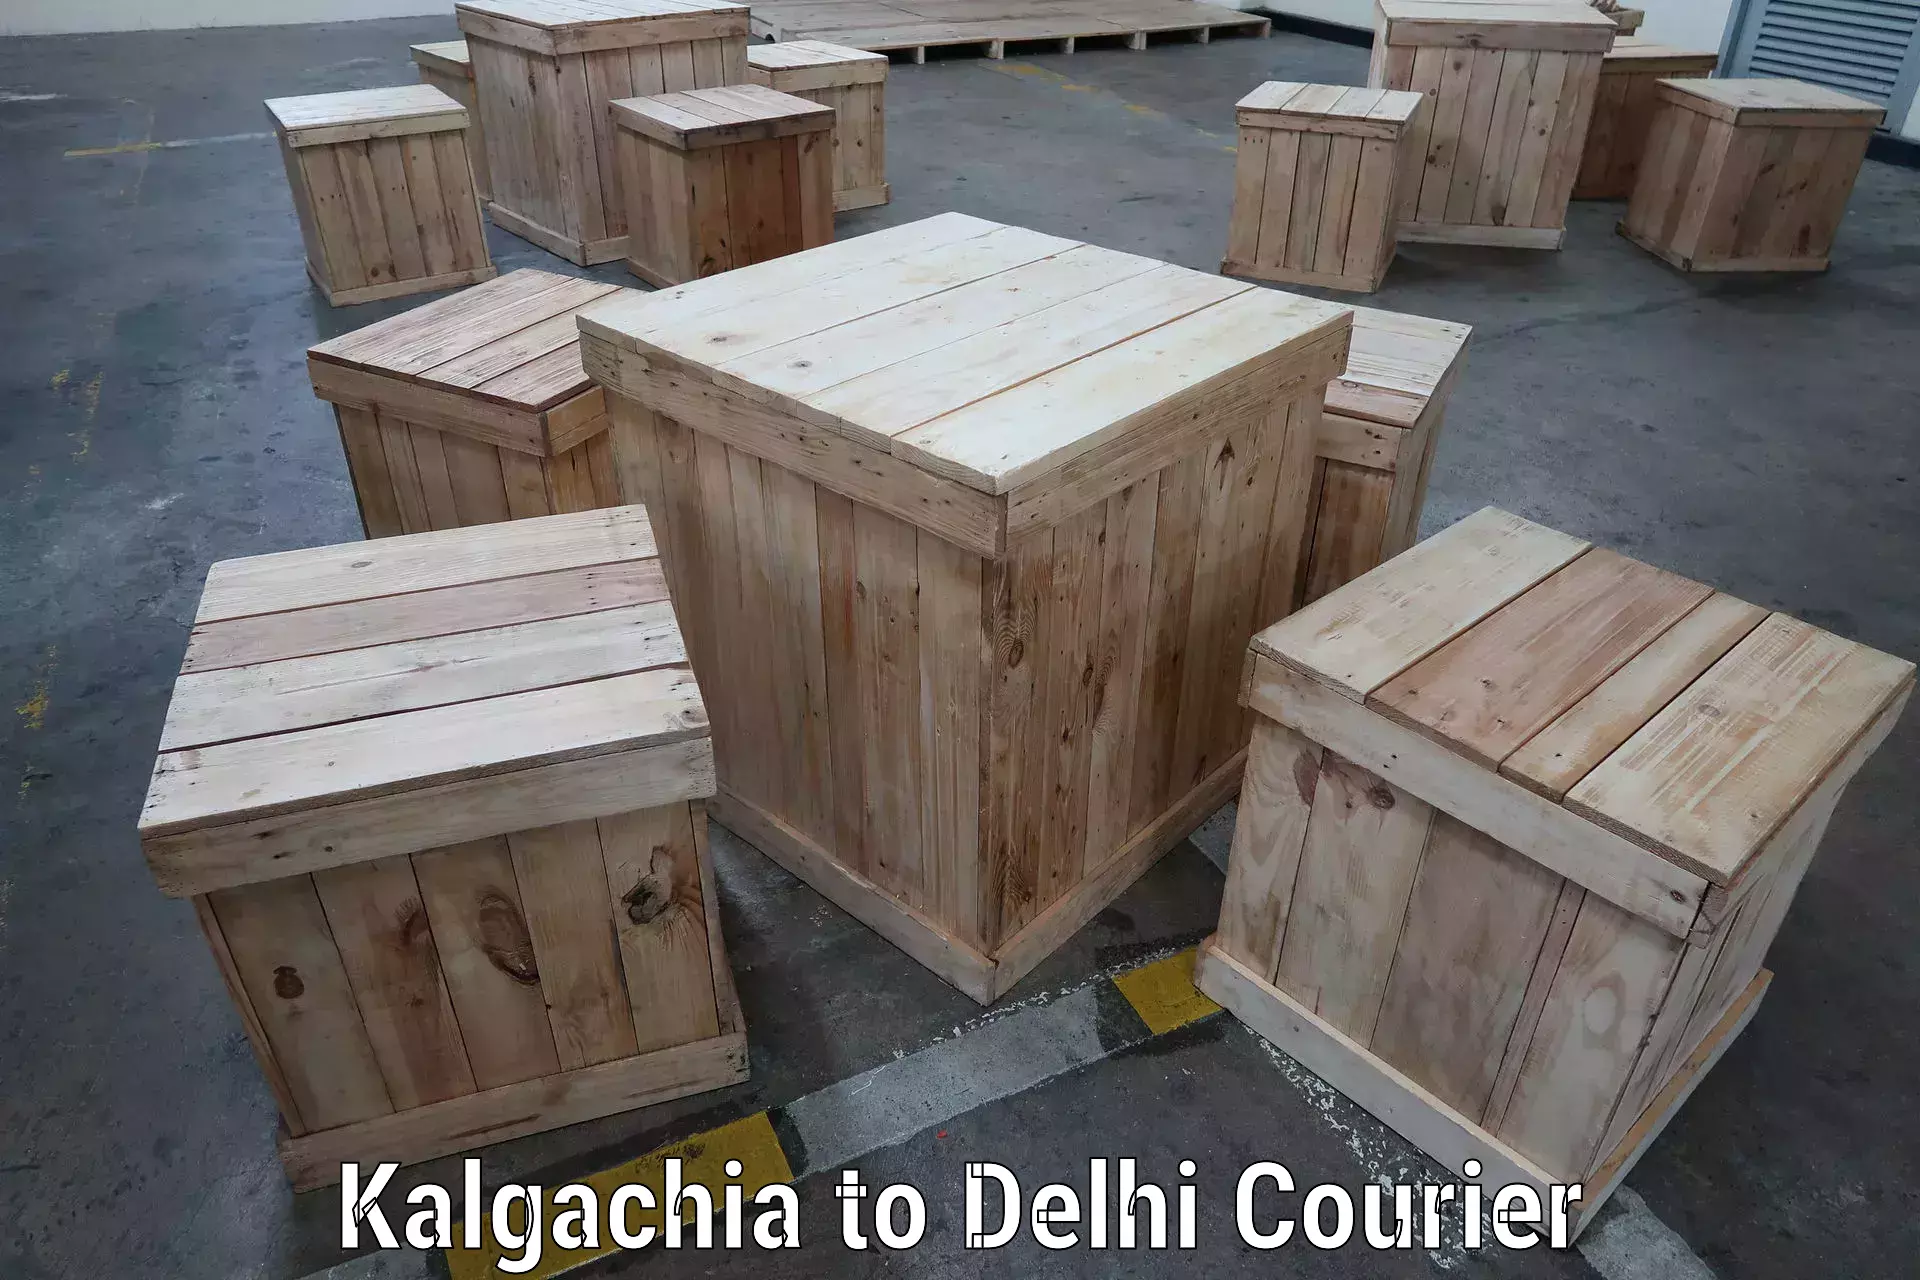 24-hour courier service in Kalgachia to East Delhi